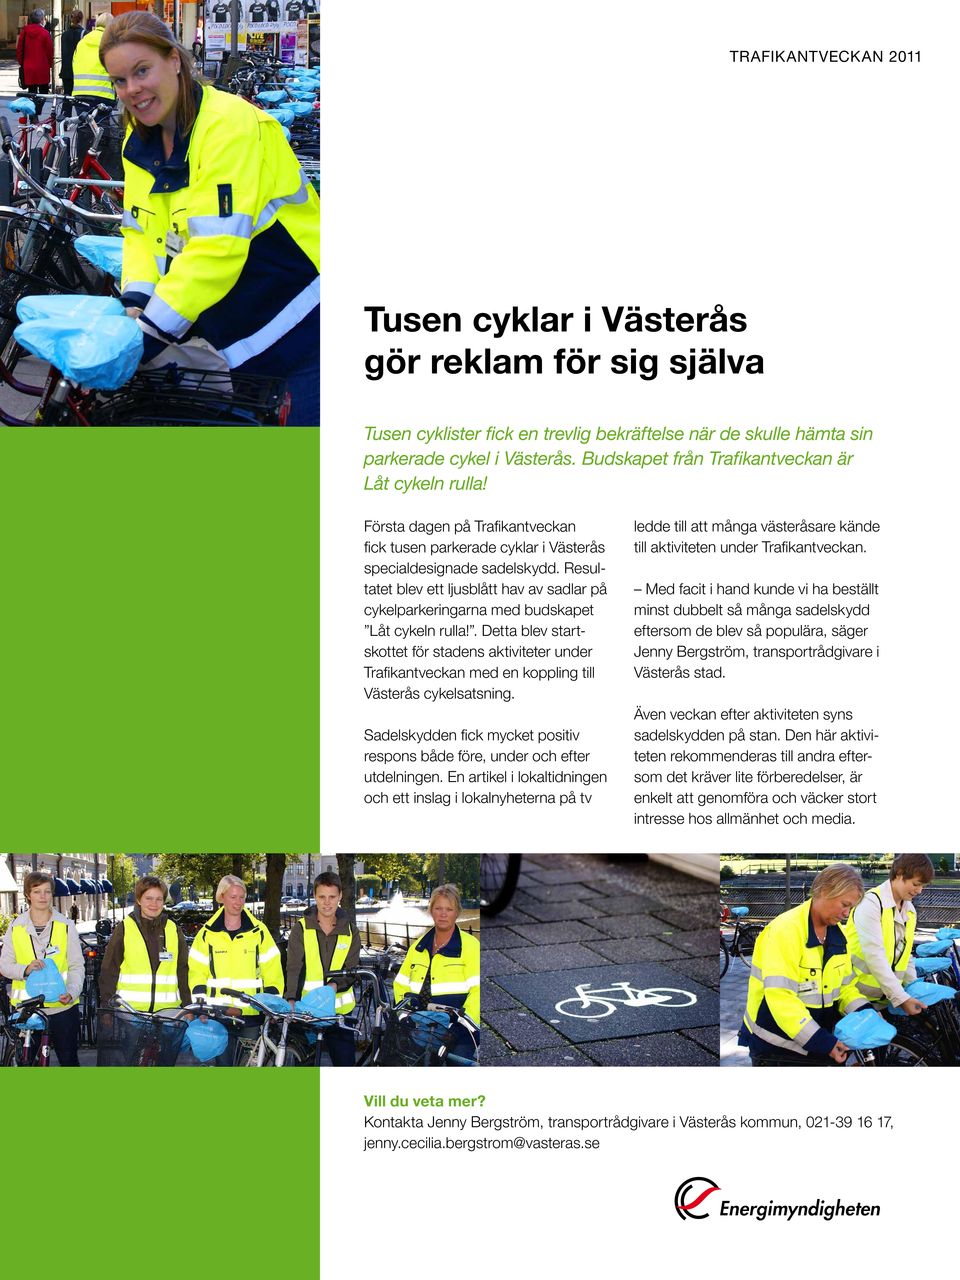 . Detta blev startskottet för stadens aktiviteter under Trafikantveckan med en koppling till Västerås cykelsatsning. Sadelskydden fick mycket positiv respons både före, under och efter utdelningen.